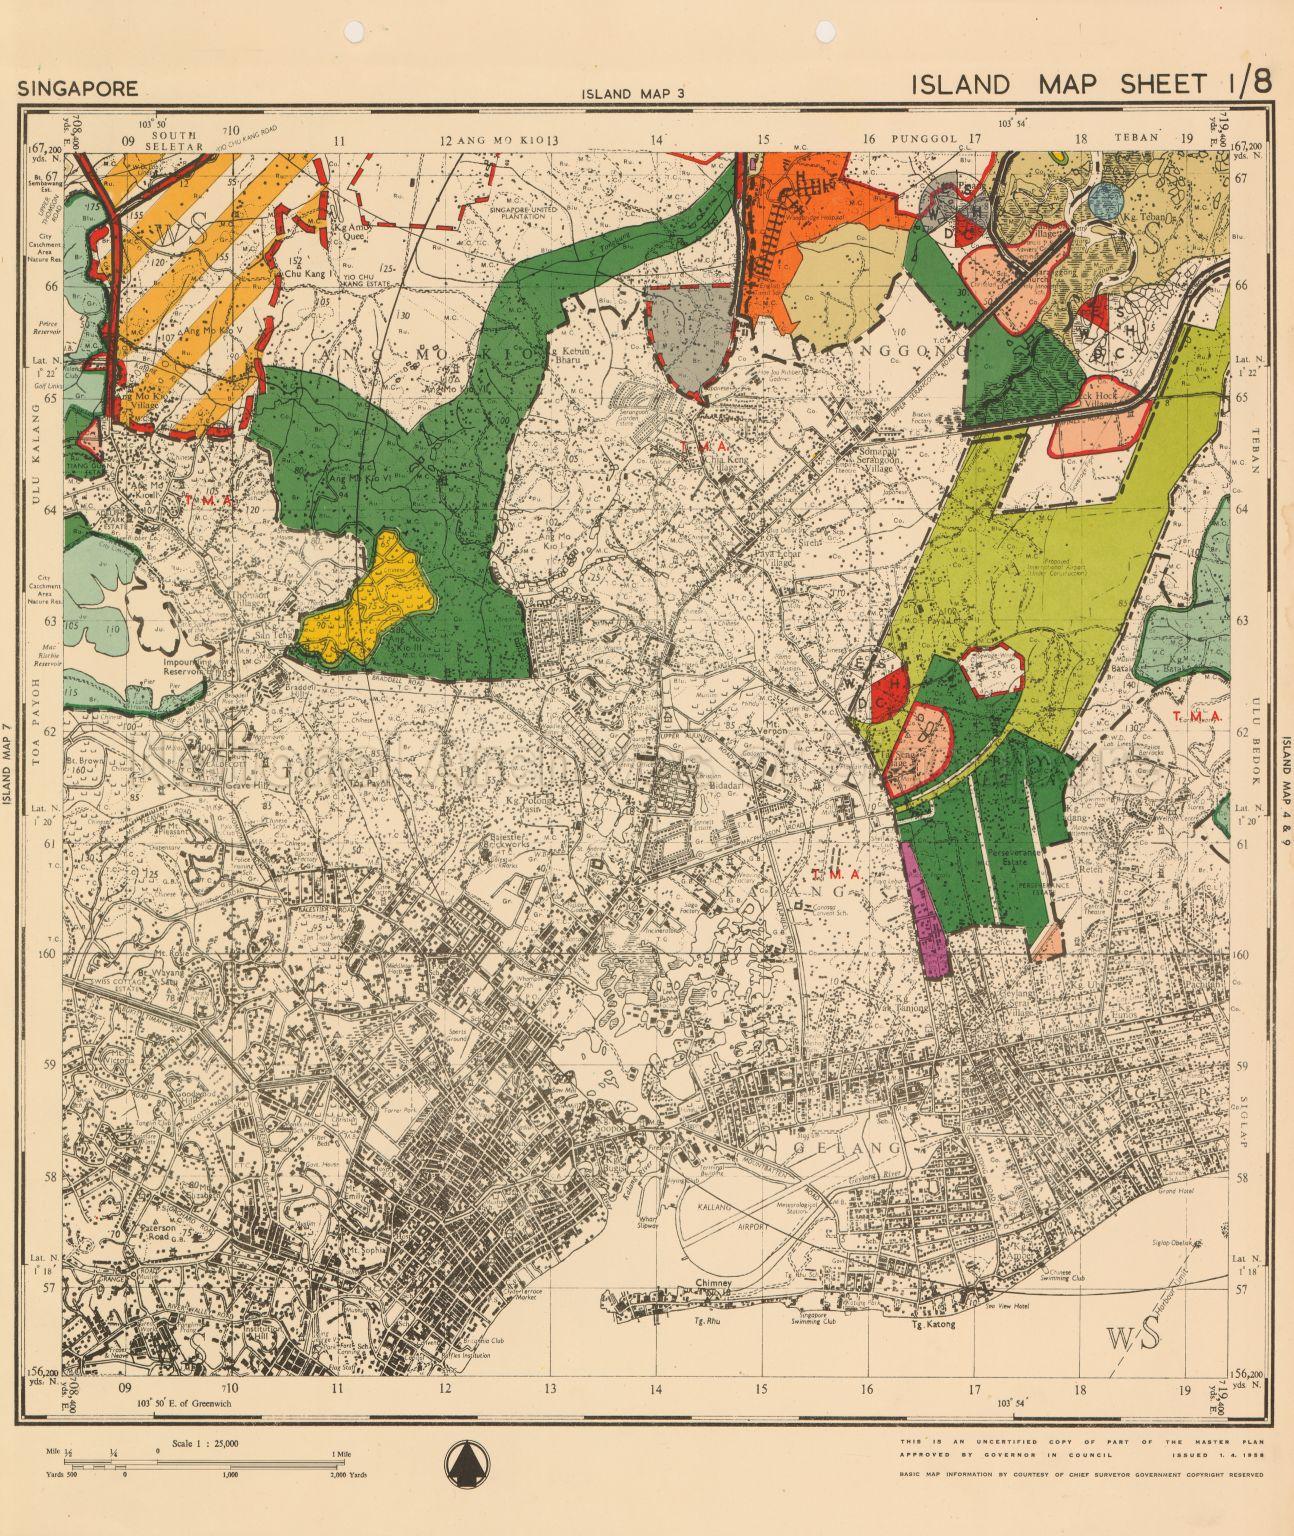 1958 Master Plan: Singapore Island Map Sheet 1/8